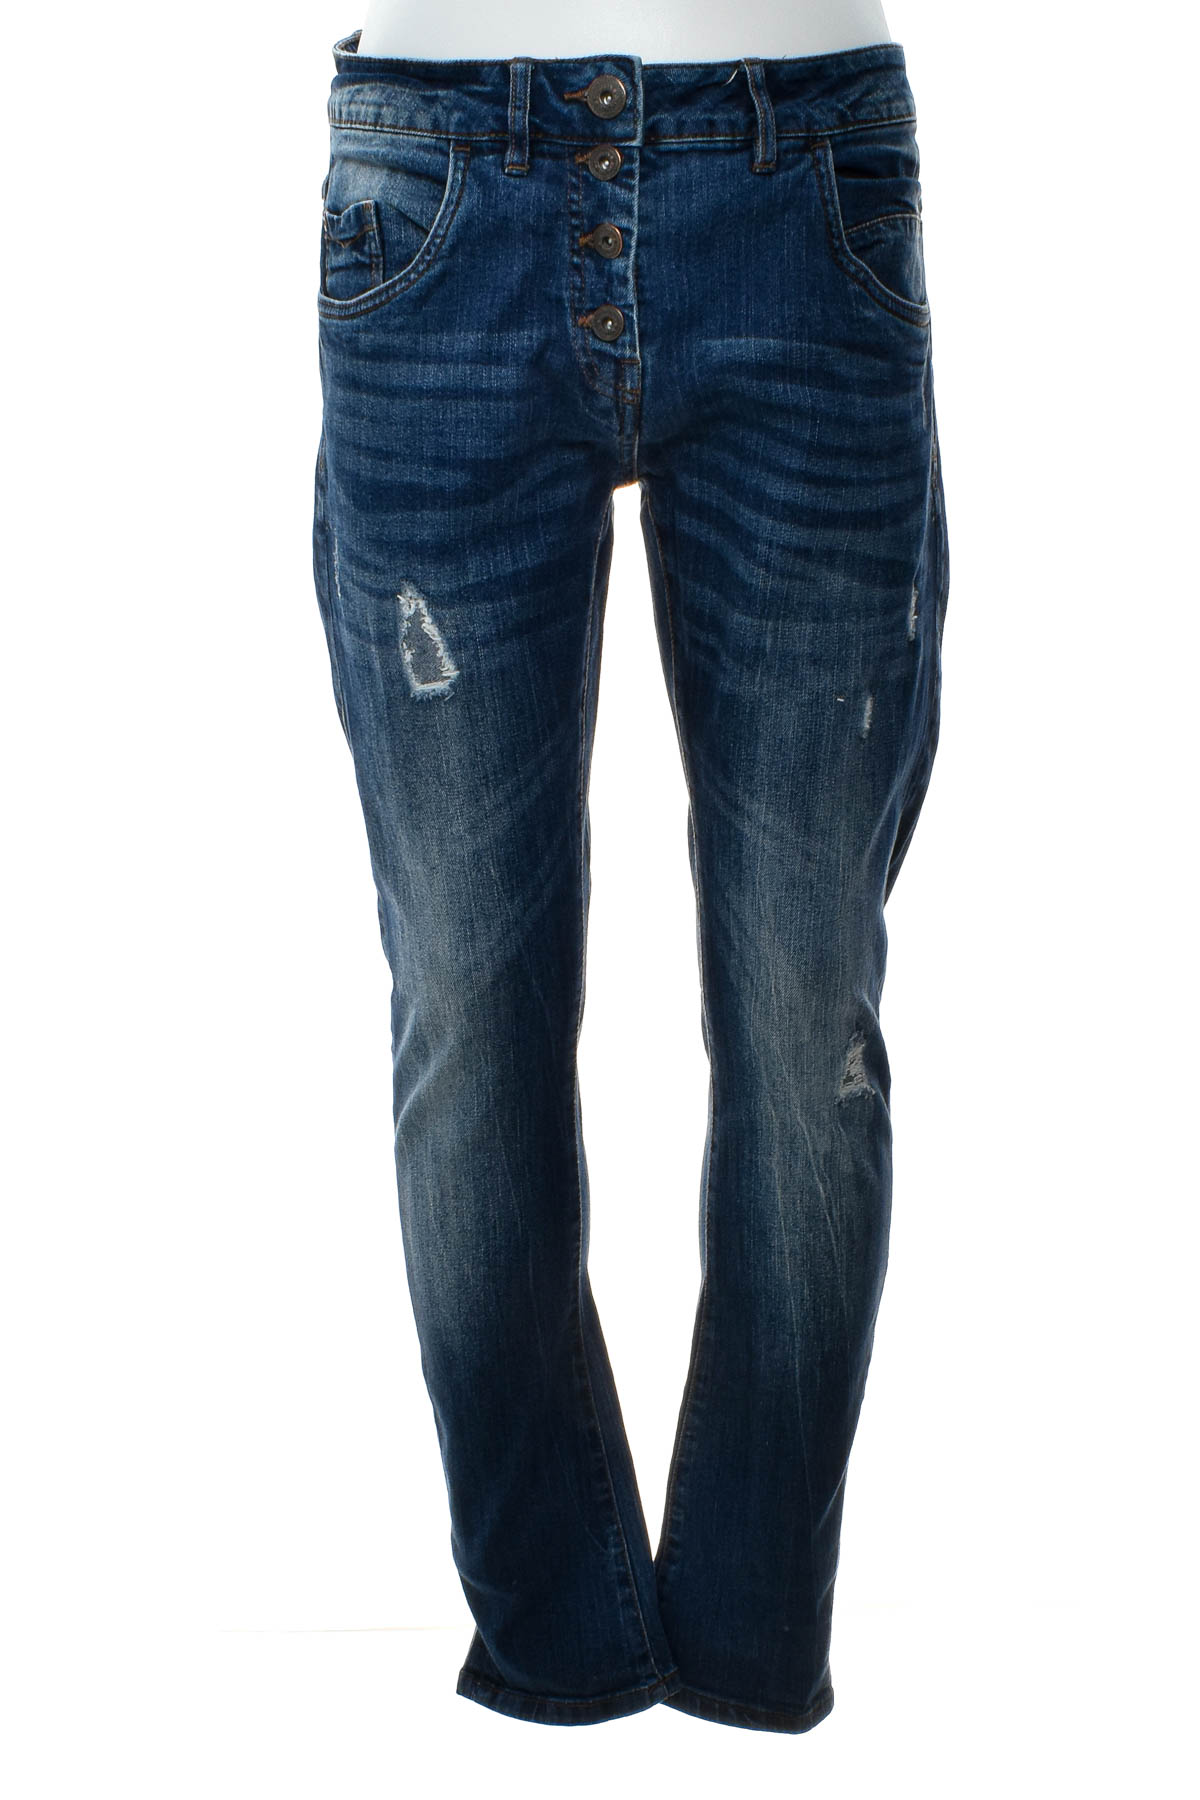 Jeans pentru bărbăți - Blue Motion - 0